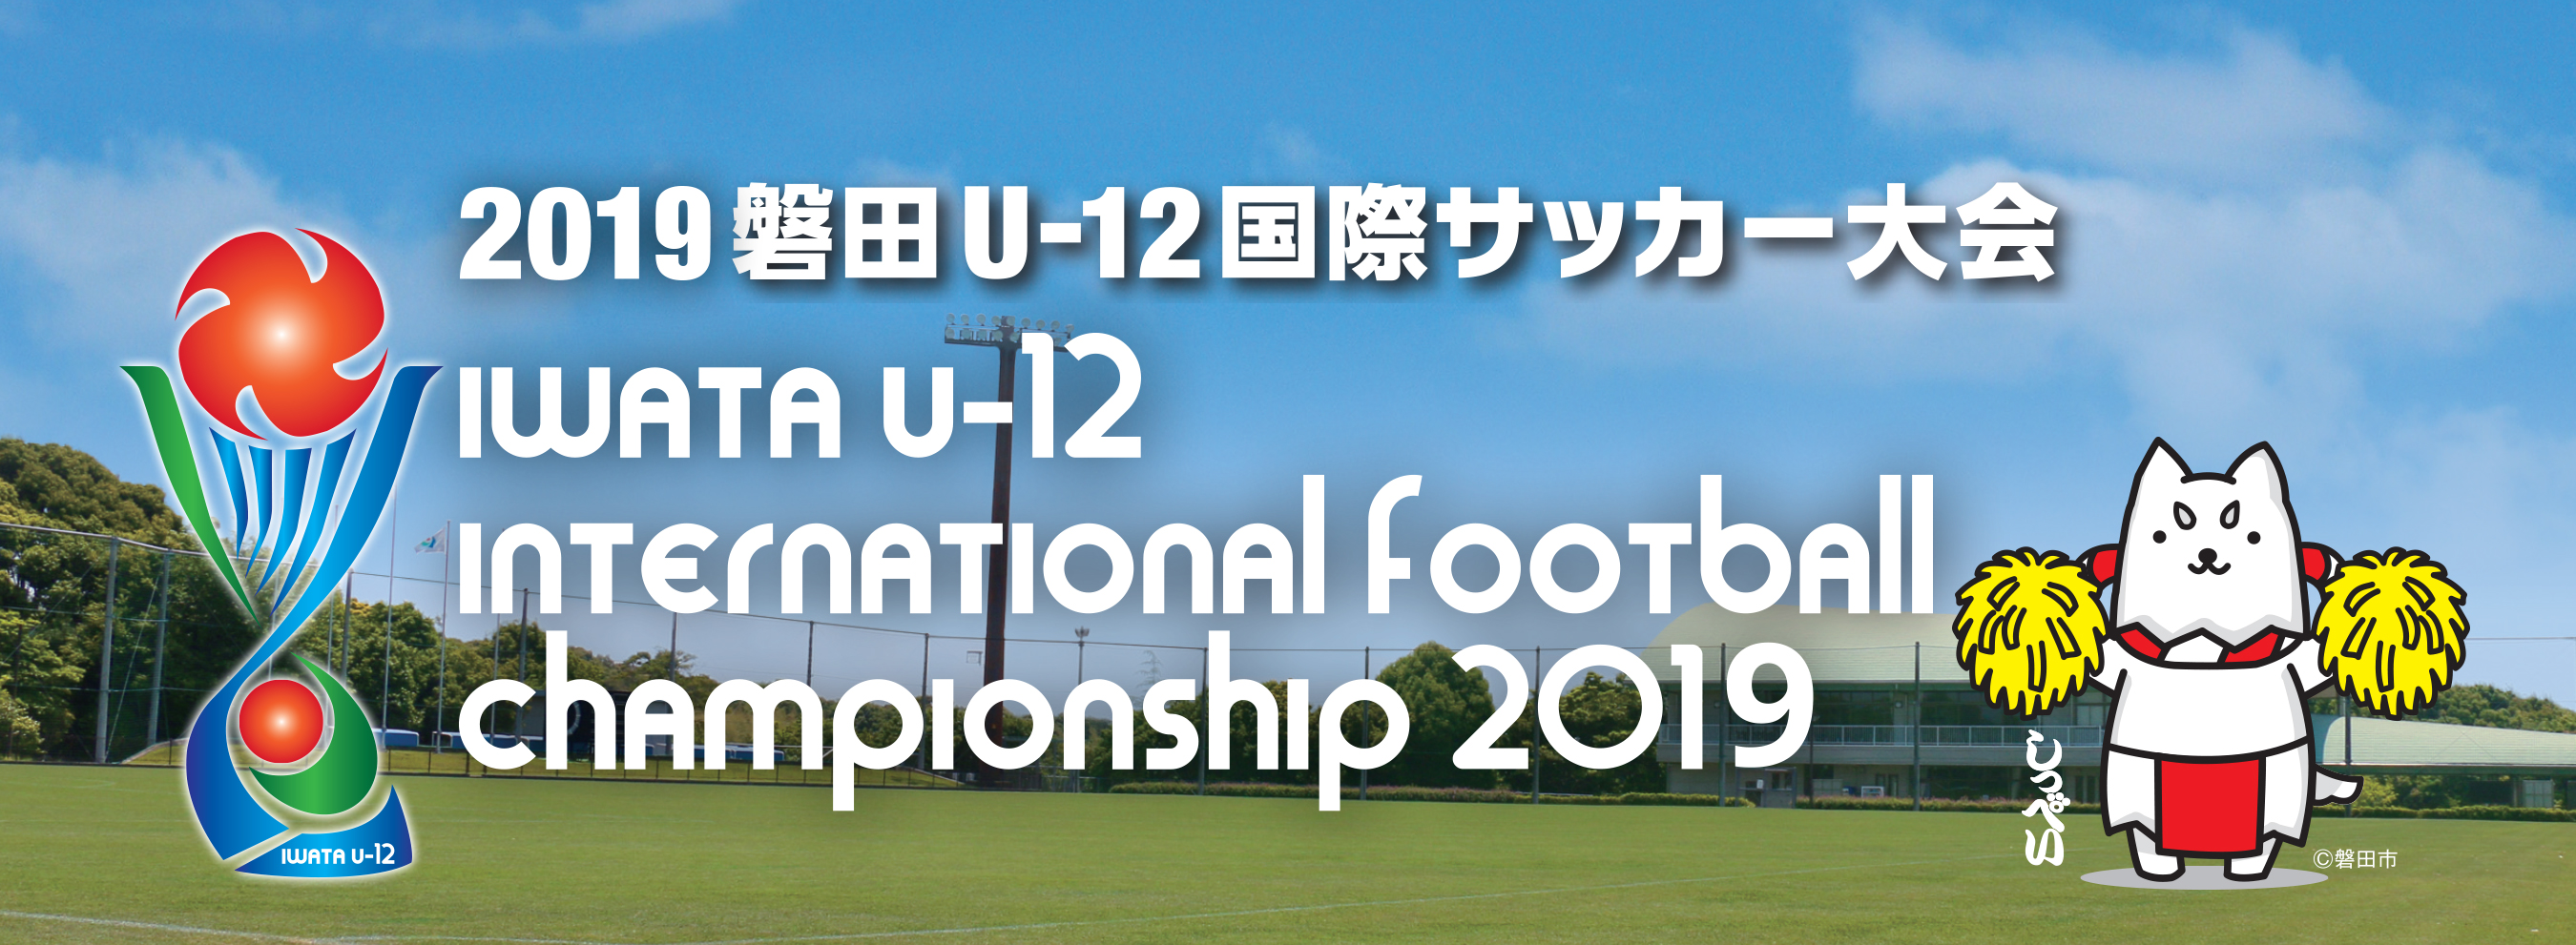 ジュビロ磐田 Jubilo Iwata 19磐田u12国際サッカー大会